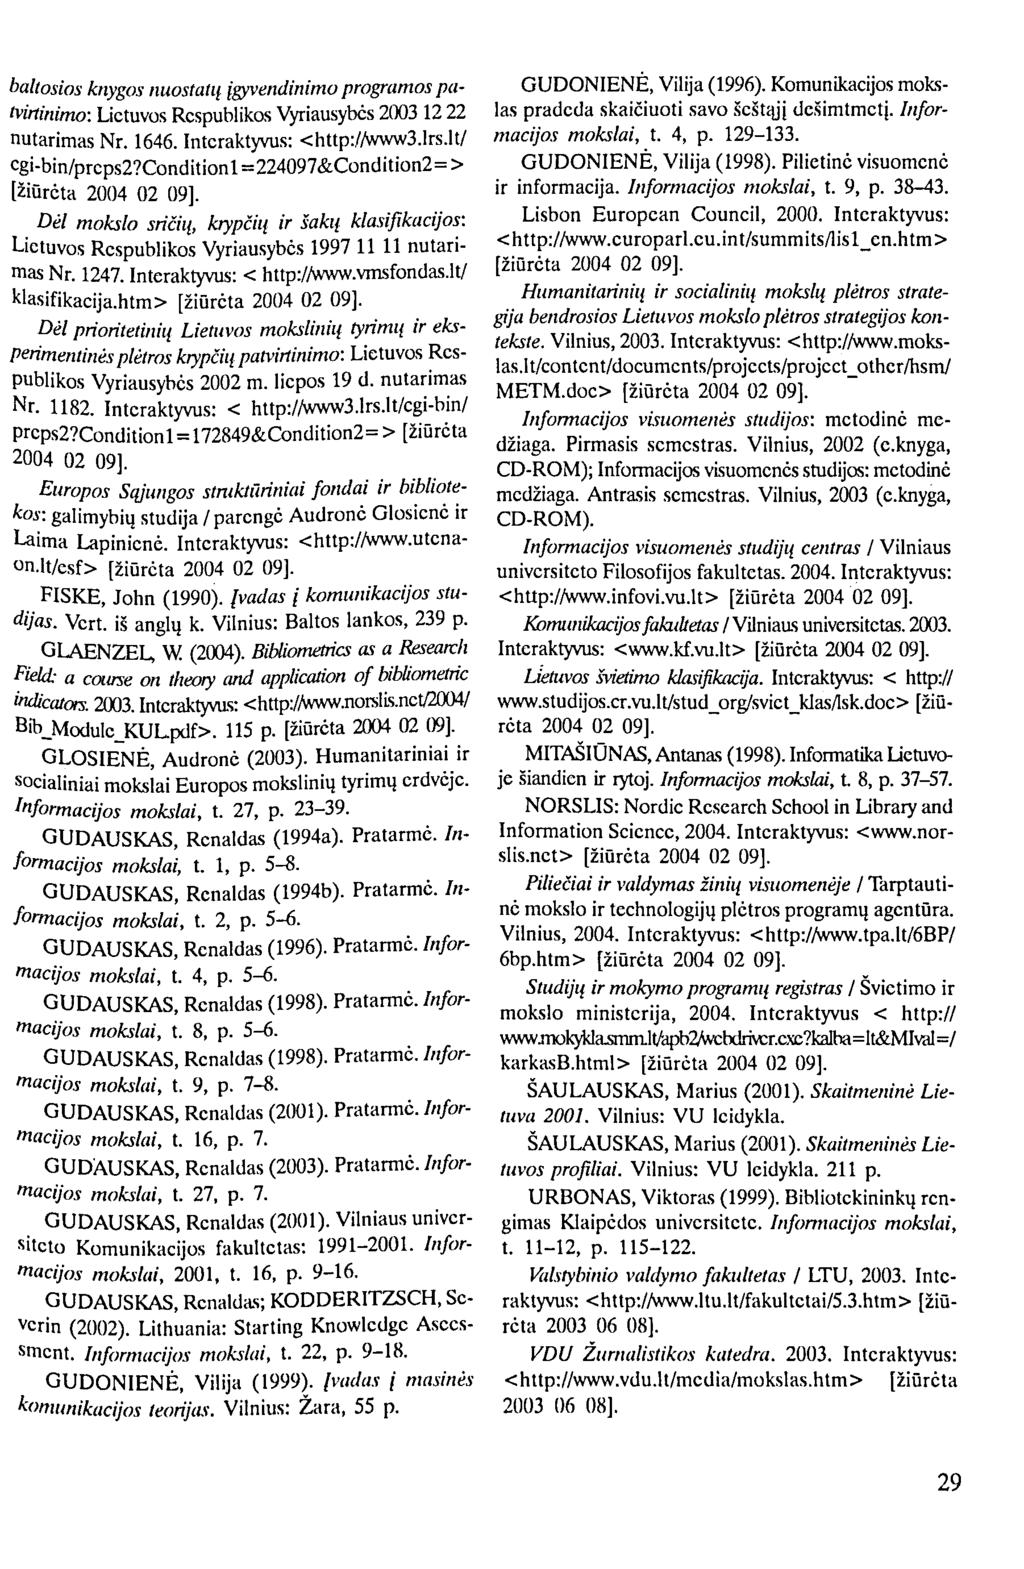 baltosios knygos nuostatų įgyvendinimo programos patvirtinimo: Lietuvos Respublikos Vyriausybės 2003 12 22 nutarimas Nr. 1646. Interaktyvus: <http://www3.lrs.lt/ cgi-bin/prcps2?